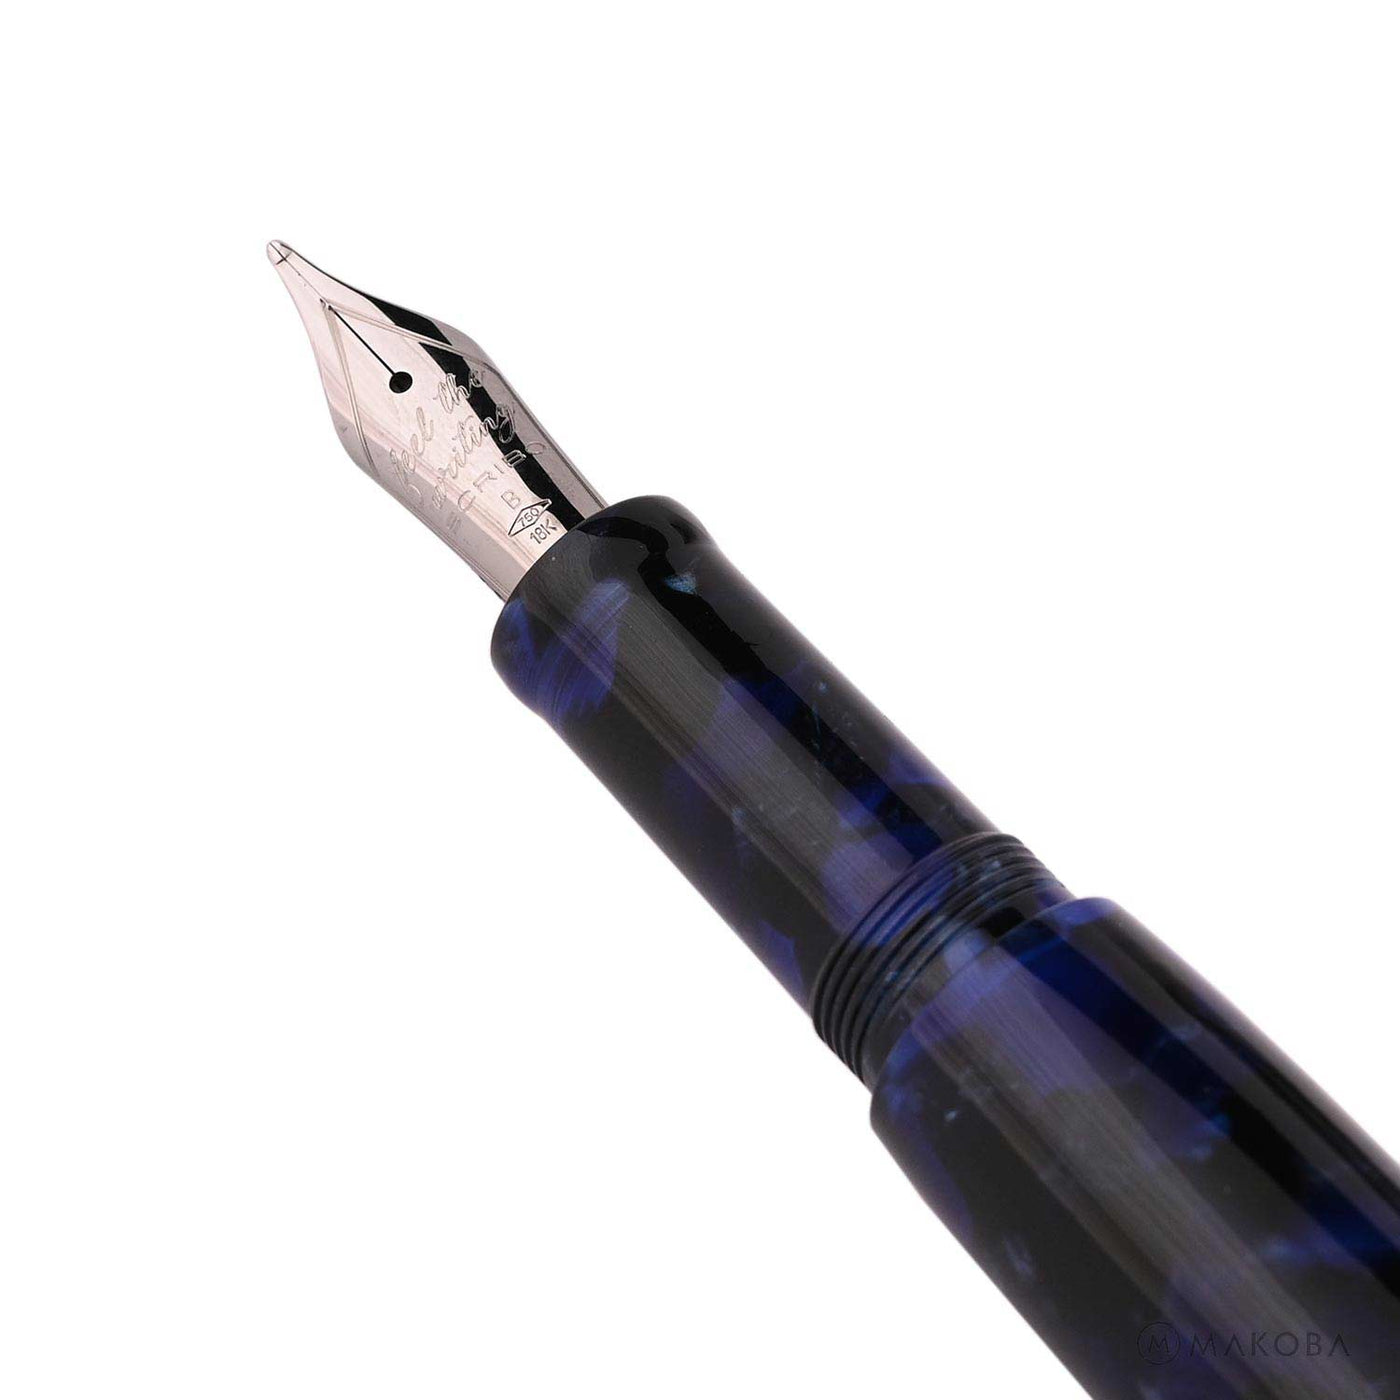 Scribo La Dotta Fountain Pen - Piella (Limited Edition) 2